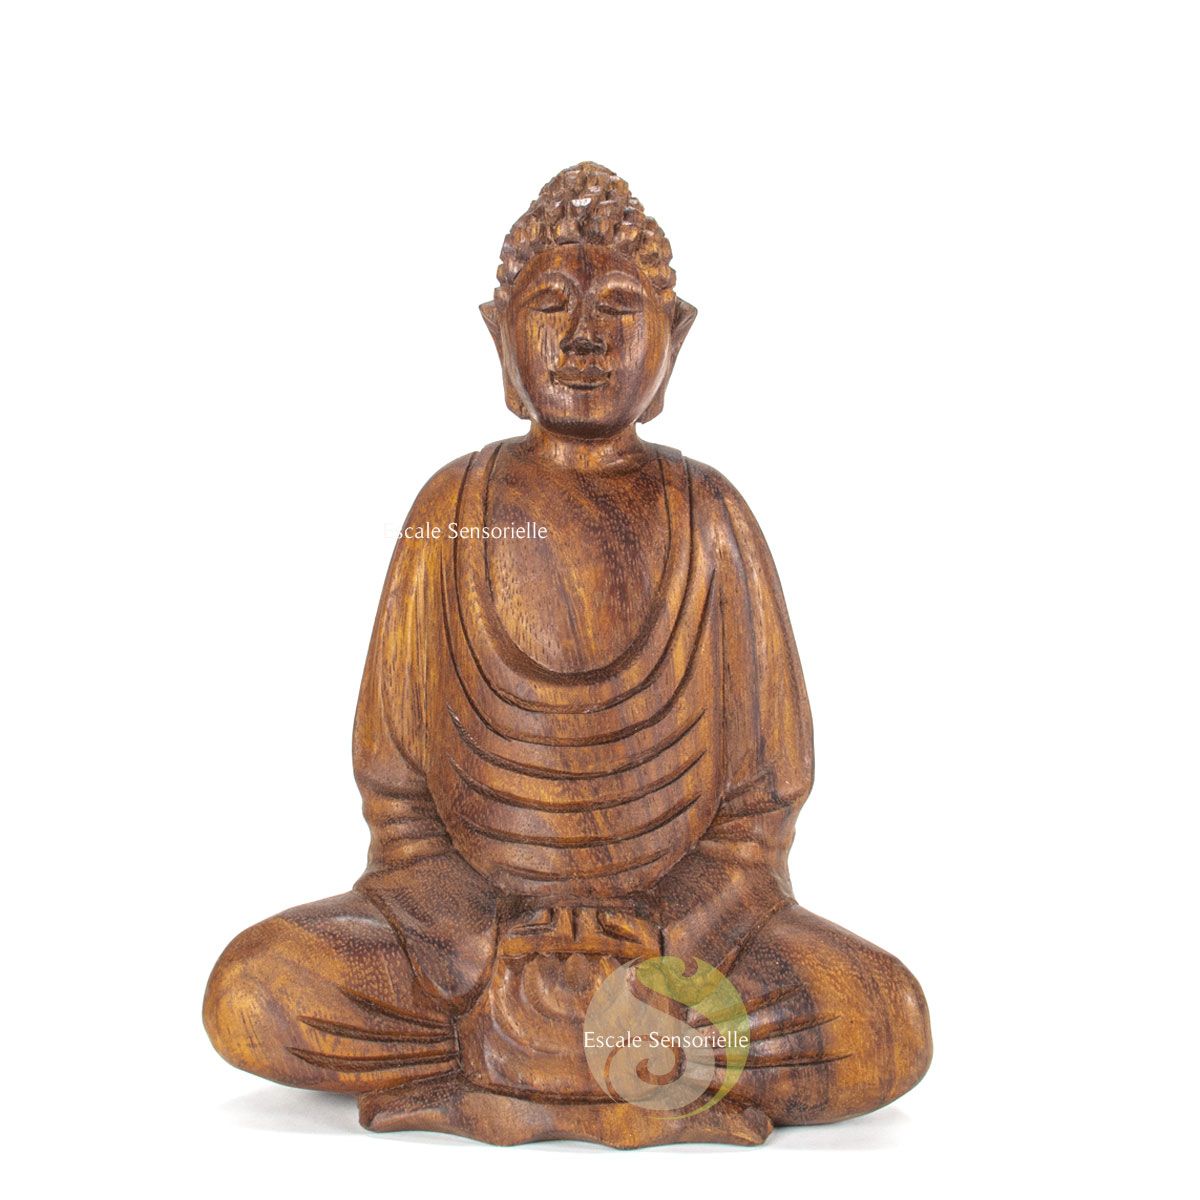 Bouddha prospérité statuette bois 17cm porte bonheur chance argent